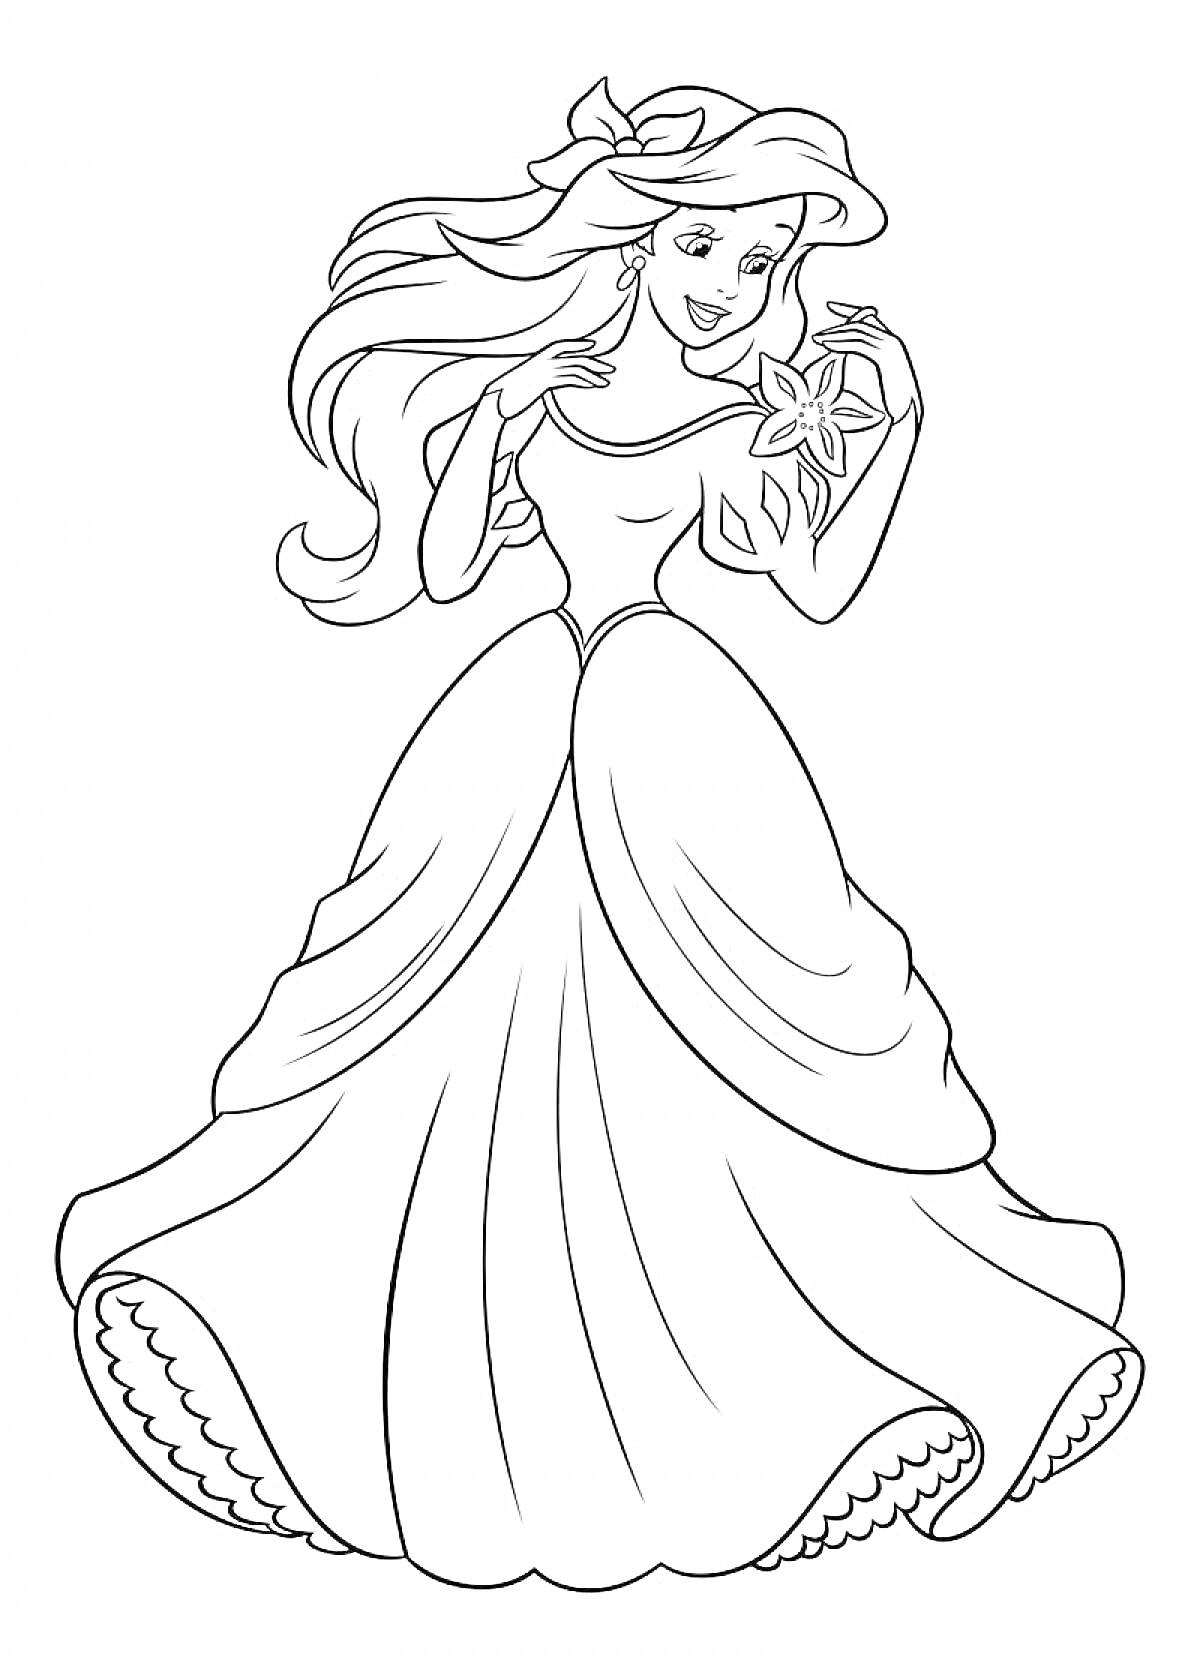 Раскраска Принцесса с длинными волосами в красивом платье, держащая морскую звезду